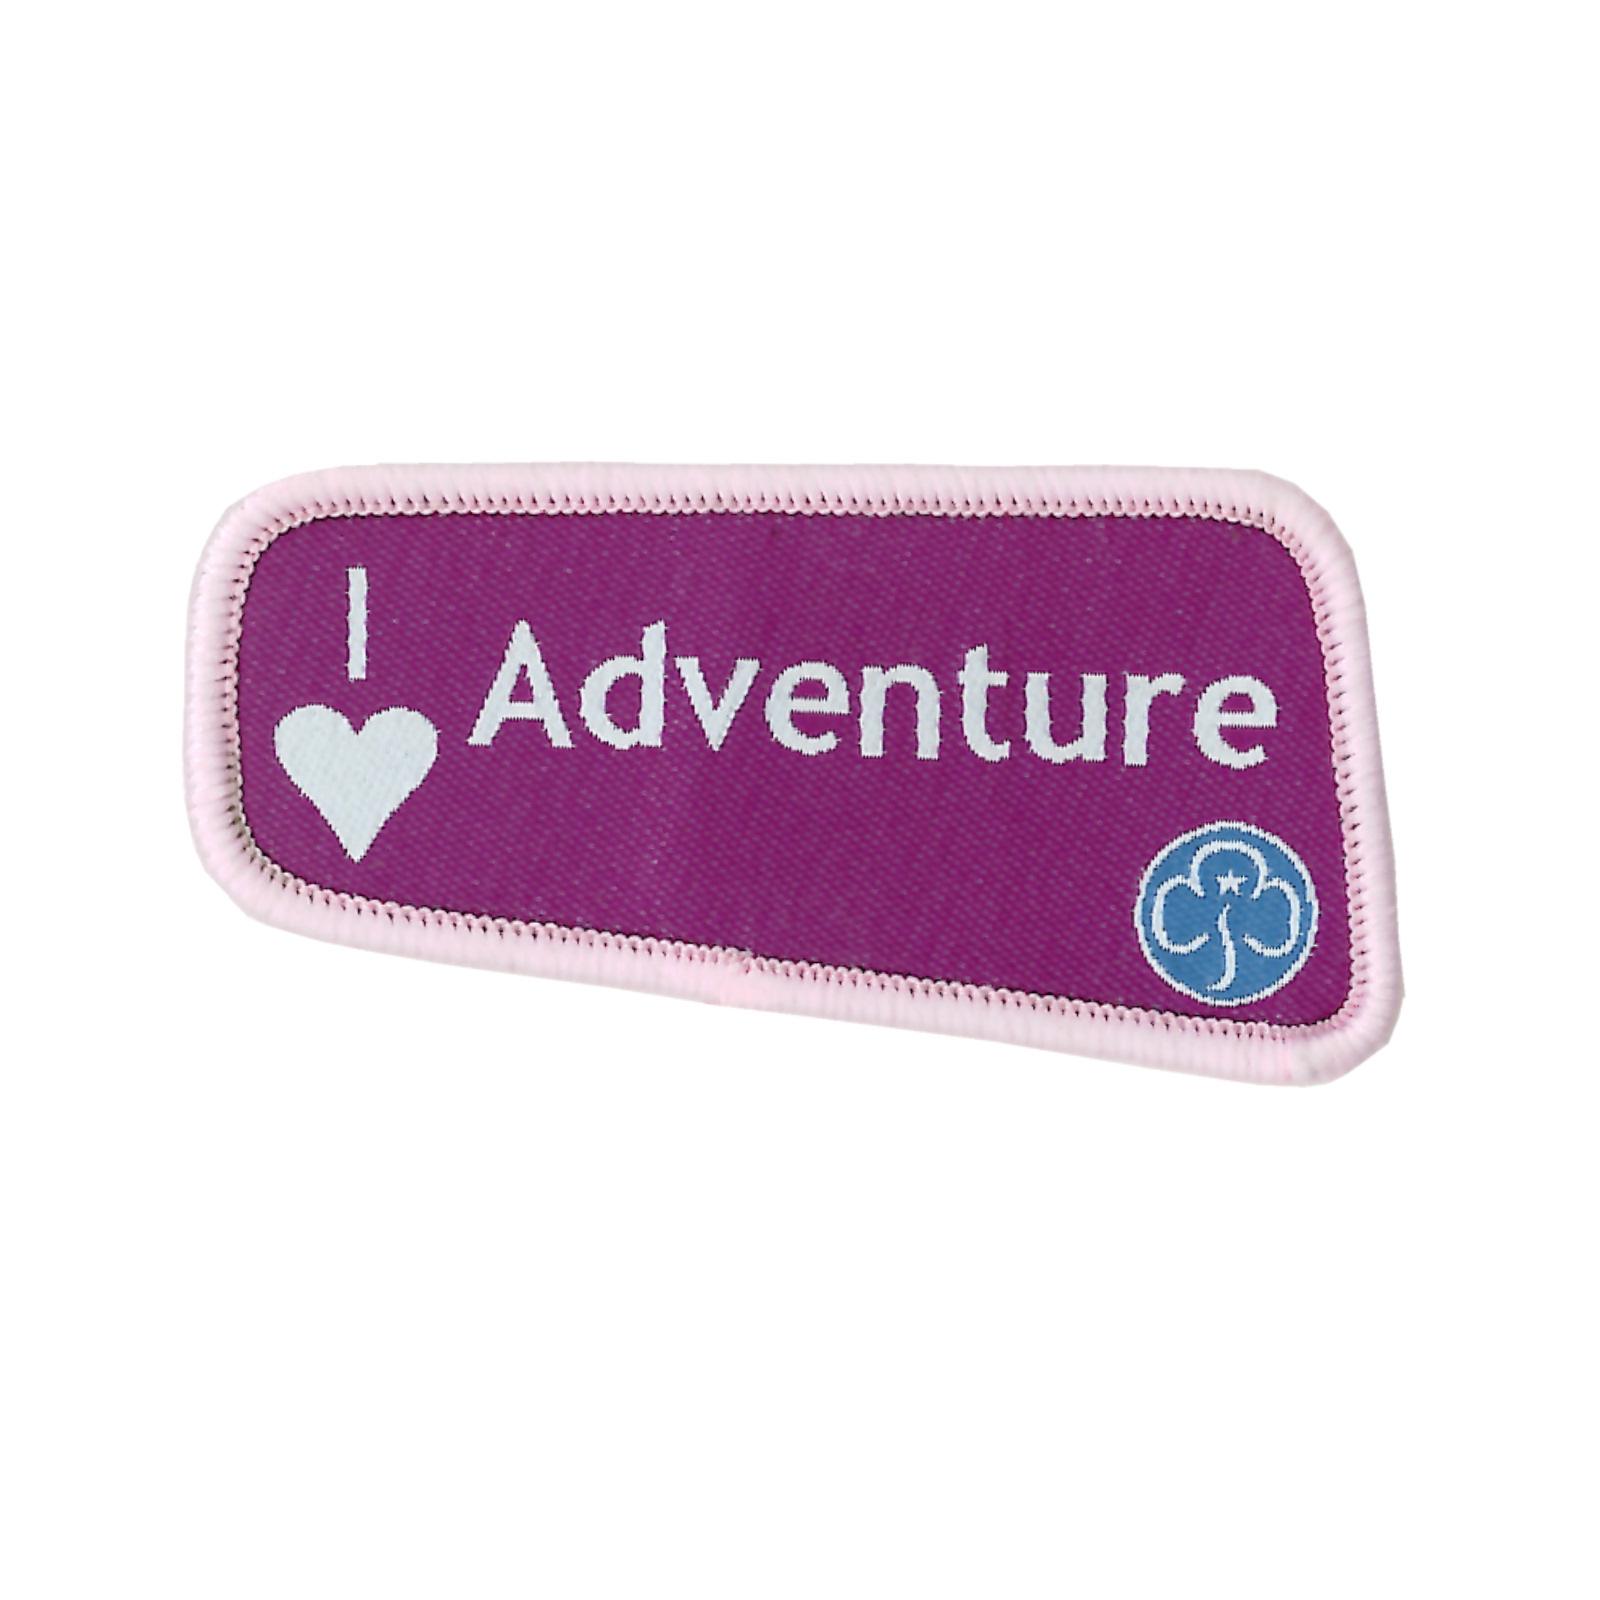 I Love Adventure Woven Badge- Girlguiding